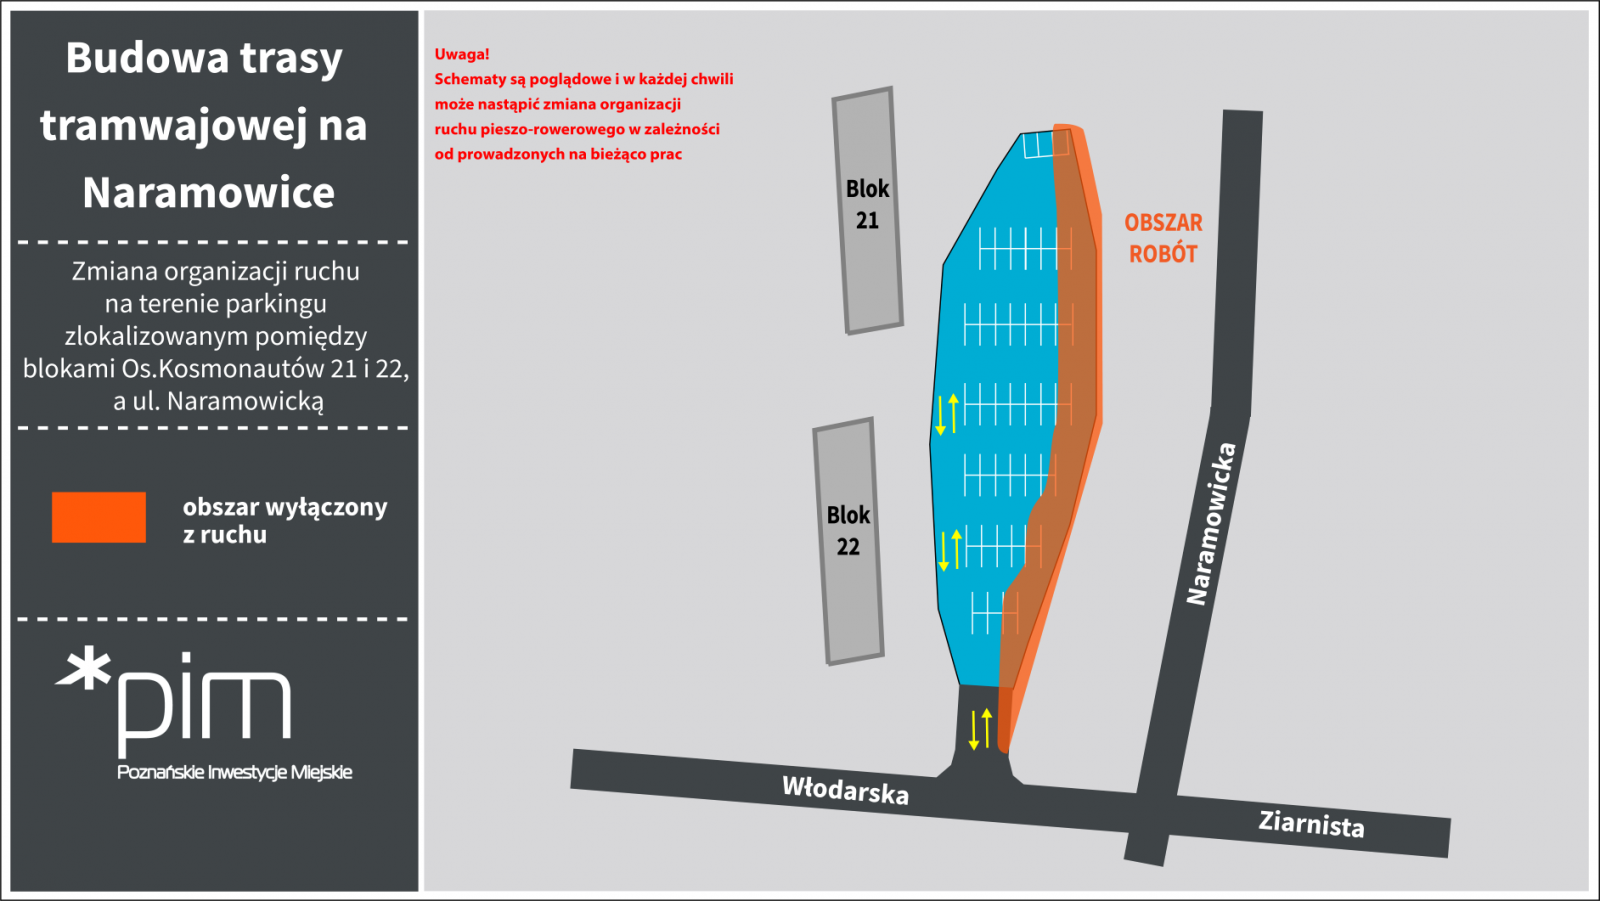 Zmiana organizacji ruchu na terenie parkingu zlokalizowanym pomiędzy blokami os. Kosmonautów 21 i 22 a ul. Naramowicką. Obszar wyłączony z ruchu zaznaczony na pomarańczowo. - grafika artykułu